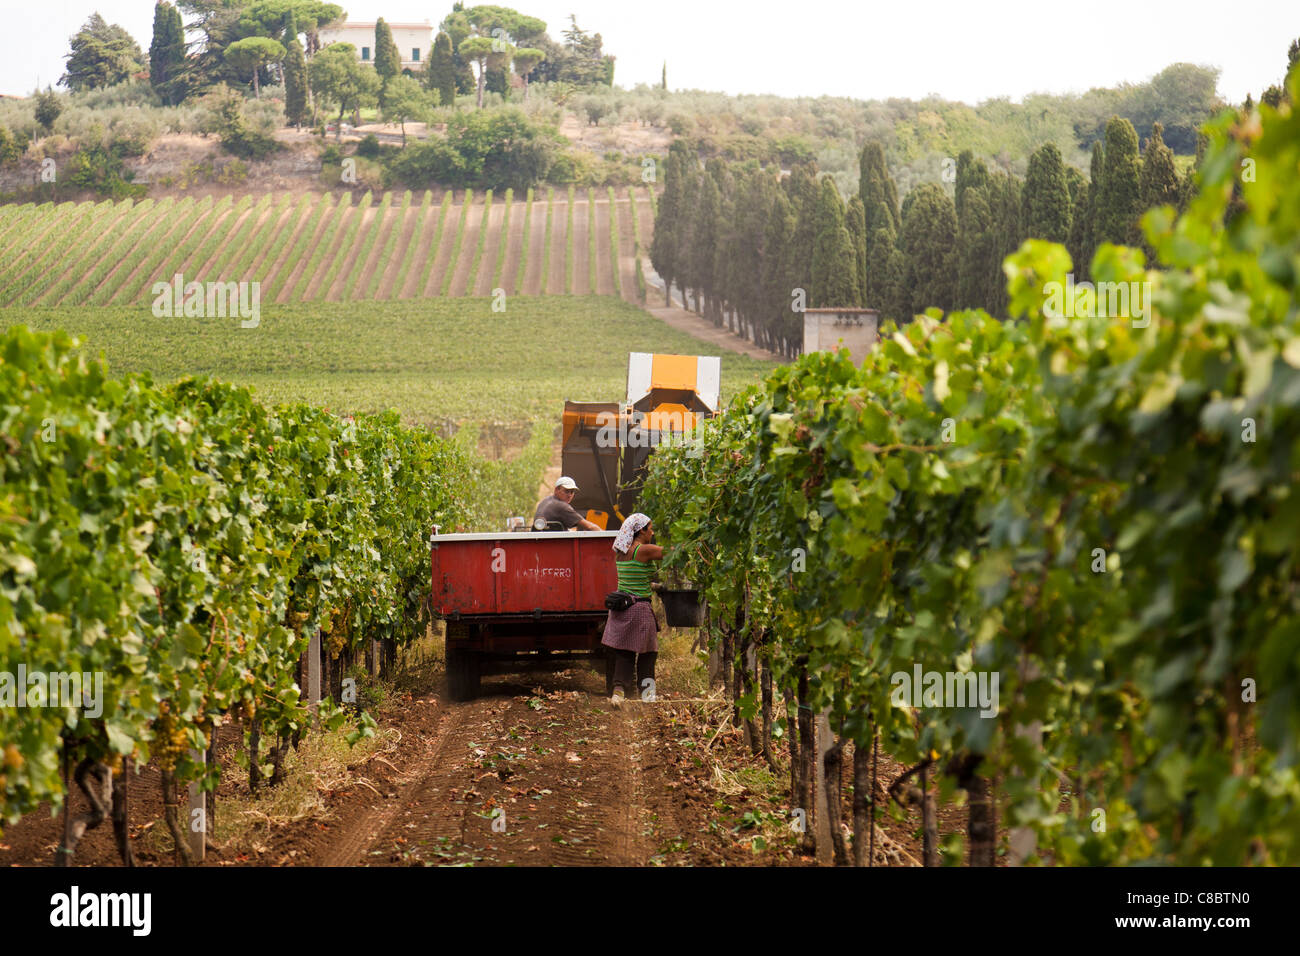 La récolte récolteuse mécanique de raisins à Frascati, Italie Banque D'Images